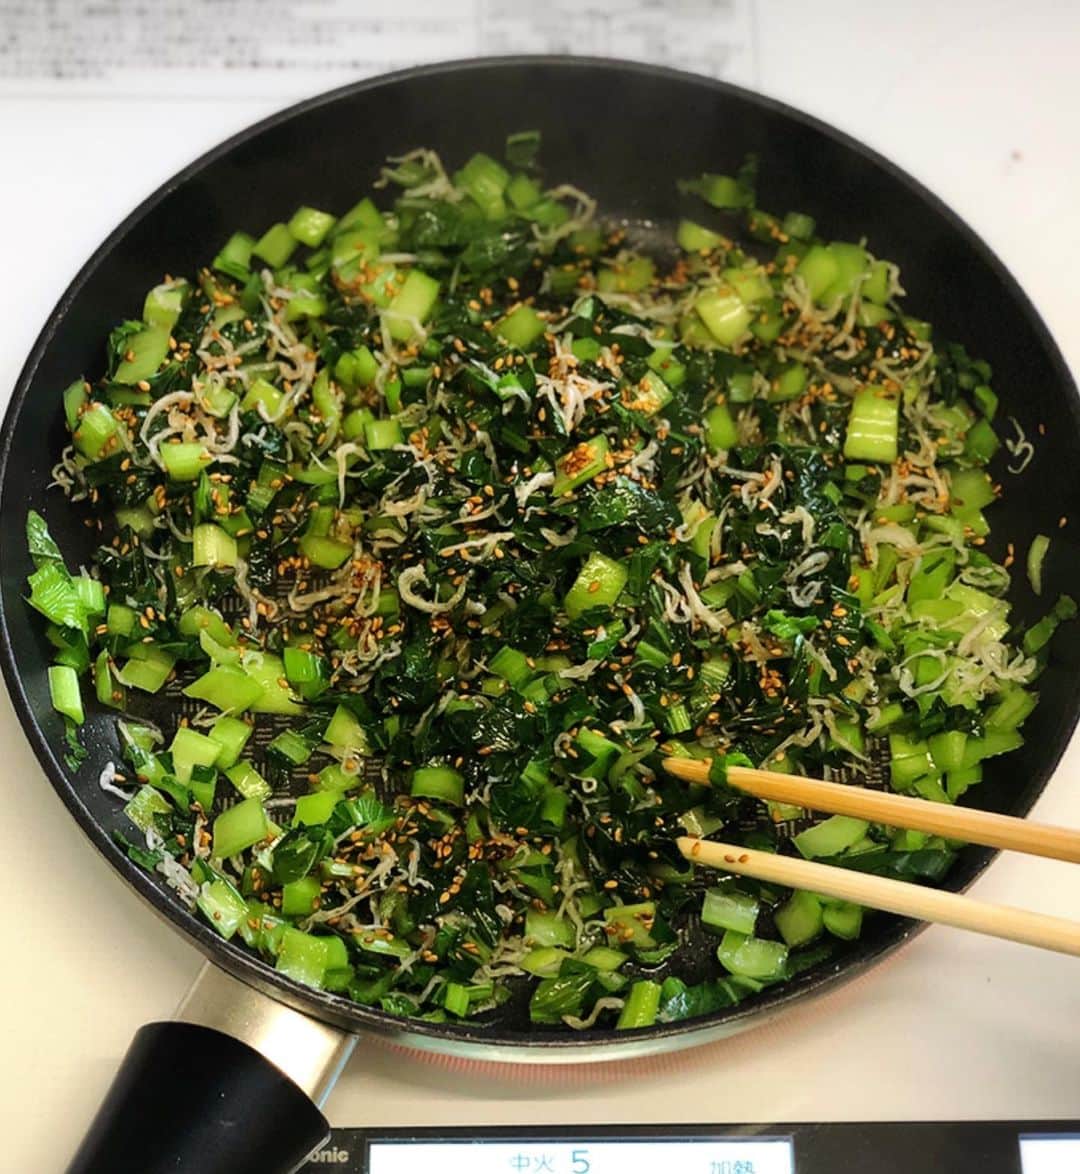 Mizuki【料理ブロガー・簡単レシピ】さんのインスタグラム写真 - (Mizuki【料理ブロガー・簡単レシピ】Instagram)「・﻿ 【レシピ】ーーーーーーーーーーーーー﻿ ♡小松菜とじゃこのふりかけごはん♡﻿ ーーーーーーーーーーーーーーーーーー﻿ ﻿ ﻿ おはようございます(*^^*)﻿ ﻿ 今日ご紹介させていただくのは﻿ 小松菜とじゃこのふりかけごはん♩﻿ ﻿ このふりかけは万能で﻿ 今回のようにごはんにのせたり﻿ 混ぜ込んでおにぎりの具にしたり﻿ パスタやうどんにかけても絶品です！﻿ 冷蔵庫で4〜5日持つので﻿ 作り置きしておくと便利ですよ〜♡﻿ ﻿ さっと炒めるだけでできるので﻿ よかったらお試し下さいね(*´艸`)﻿ ﻿ ﻿ ﻿ ーーーーーーーーーーーーーーーーーーーー﻿ 【作りやすい量・4人分】﻿ 小松菜...1束(200g)﻿ ちりめんじゃこ...30g﻿ ごま油...大1﻿ ●白ごま...大2﻿ ●みりん・醤油...各大1/2﻿ ごはん・卵黄...各2人分﻿ ﻿ 1.小松菜は1cm幅に切る。﻿ 2.フライパンにごま油を入れて中火で熱し、小松菜を炒める。しんなりしたらちりめんじゃこも加えてさっと炒め、●を加えて炒め合わせる。(ふりかけ完成♩)﻿ 3.器にごはんを盛り、2をかけて卵黄をのせる。﻿ ーーーーーーーーーーーーーーーーーーーー﻿ ﻿ ﻿ 《ポイント》﻿ ♦︎作り置きする場合は、冷ました後保存容器に入れて冷蔵庫で保存して下さい♩﻿ ♦︎茹でたパスタやうどんにふりかけをたっぷりかけ、お好みで卵黄をのせ、醤油やポン酢をちょろっとかけても美味しいです♩﻿ ﻿ ﻿ ﻿ ﻿ ﻿ ＿＿＿＿＿＿＿＿＿＿＿＿＿＿＿＿＿﻿ ＿＿＿＿＿＿＿＿＿＿＿＿＿＿＿＿＿﻿ 🎀発売中🎀﻿ 【#ホットケーキミックスのお菓子 】﻿ ﻿ 一冊まるっとホケミスイーツ♩﻿ 普段のおやつから﻿ 特別な日にも使えるレシピを﻿ この一冊に詰め込みました(*^^*)﻿ ホットケーキミックスを使えば﻿ 簡単に本格的なお菓子が作れますよ♡﻿ ﻿ 🔹ハイライト、ストーリーに﻿ リンクを貼っています🔹﻿ ＿＿＿＿＿＿＿＿＿＿＿＿＿＿＿＿＿﻿ ＿＿＿＿＿＿＿＿＿＿＿＿＿＿＿＿＿﻿ ﻿ ﻿ ﻿ ＿＿＿＿＿＿＿＿＿＿＿＿＿＿＿＿＿＿＿﻿ 📕\ \ 新刊発売中 / /📕﻿ 簡単・時短！ 毎日のごはんがラクになる﻿ ✨🦋 【 #Mizukiの今どき和食 】🦋✨﻿ ＿＿＿＿＿＿＿＿＿＿＿＿＿＿＿＿＿＿＿﻿ ﻿ なるべく少ない材料で﻿ 手間も時間も省きながら﻿ 簡単にできるおいしい和食レシピ♩﻿ 簡単に失敗なくマスターできる一冊で﻿ もっと気軽に、カジュアルに﻿ 和食を楽しんで下さいね(*^^*)﻿ ﻿ ﻿ ーーー ⭐️PART.1 メインおかず ⭐️ーーー﻿ 素材別にレシピをご紹介しています♩﻿ 和食の定番から新定番まで﻿ どれも押さえておきたいメニューばかり。﻿ 肉じゃがはフライパンで！焼き豚はレンジで！﻿ ぶり大根は切り身を使って手軽に作ります♩﻿ ﻿ ーーー ☘️PART.2 サブおかず ☘️ーーー﻿ 年中手に入るお手頃野菜と﻿ 乾物や大豆、こんにゃくなどを使った﻿ 副菜レシピをたっぷり掲載！！﻿ 普段SNSではメインおかずばかりなので﻿ 本では副菜にも力を入れています(*^^*)﻿ ﻿ ーーー 🌸PART.3 ごはんと汁物 🌸ーーー﻿ ささっと作れる丼と麺、﻿ みんなで食べたいいなり寿司や﻿ 手巻きごはんもご紹介！﻿ 複数の炊き込みごはんと﻿ 味噌汁&和風スープも盛りだくさん！﻿ ﻿ ﻿ 各レシピのポイントは﻿ 【写真付きで丁寧に解説】﻿ 副菜レシピもたっぷりなので﻿ 【メインページに副菜メモもつけました】﻿ ＊このメインにはこの副菜が合いますよ〜﻿ という献立の提案です(*^^*)﻿ 【その他コラムも充実】﻿ 全127品中ほぼ全て﻿ 【本だけのレシピです！】﻿ ﻿ ＿＿＿＿＿＿＿＿＿＿＿＿＿＿＿＿＿＿＿﻿ ﻿ ⭐️ストーリー、ハイライト、プロフ画面に﻿ 本のURLを貼らせていただいております♩﻿ →(@mizuki_31cafe )﻿ ﻿ ＿＿＿＿＿＿＿＿＿＿＿＿＿＿＿＿＿＿＿﻿ ﻿ ﻿ ﻿ ﻿ #小松菜#ちりめんじゃこ#ふりかけ#丼#コスパ#節約#うちで過ごそう#おうち時間#Mizuki#簡単レシピ#時短レシピ#節約レシピ#料理#レシピ#フーディーテーブル#おうちごはん#おうちカフェ#デリスタグラマー#料理好きな人と繋がりたい#料理ブロガー#おうちごはんlover#foodpic#follow#cooking#recipe#lin_stagrammer#stayhome#小松菜とじゃこのふりかけごはんm」4月22日 7時03分 - mizuki_31cafe